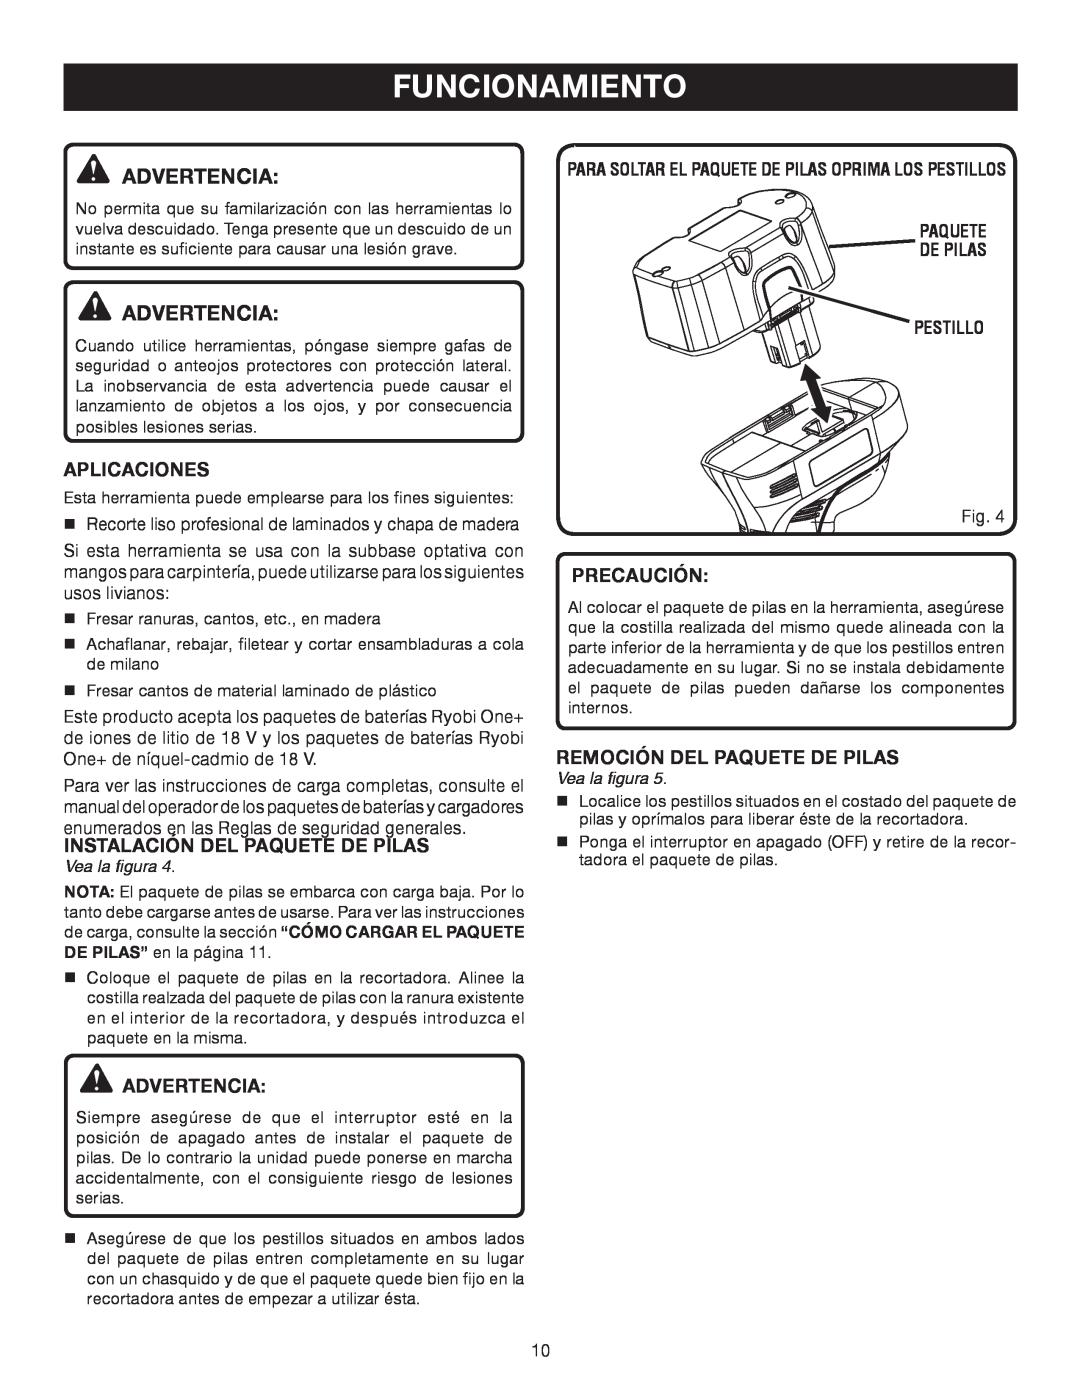 Ryobi P600 manual Funcionamiento, Advertencia, Aplicaciones, Instalación Del Paquete De Pilas, Precaución, Vea la figura 